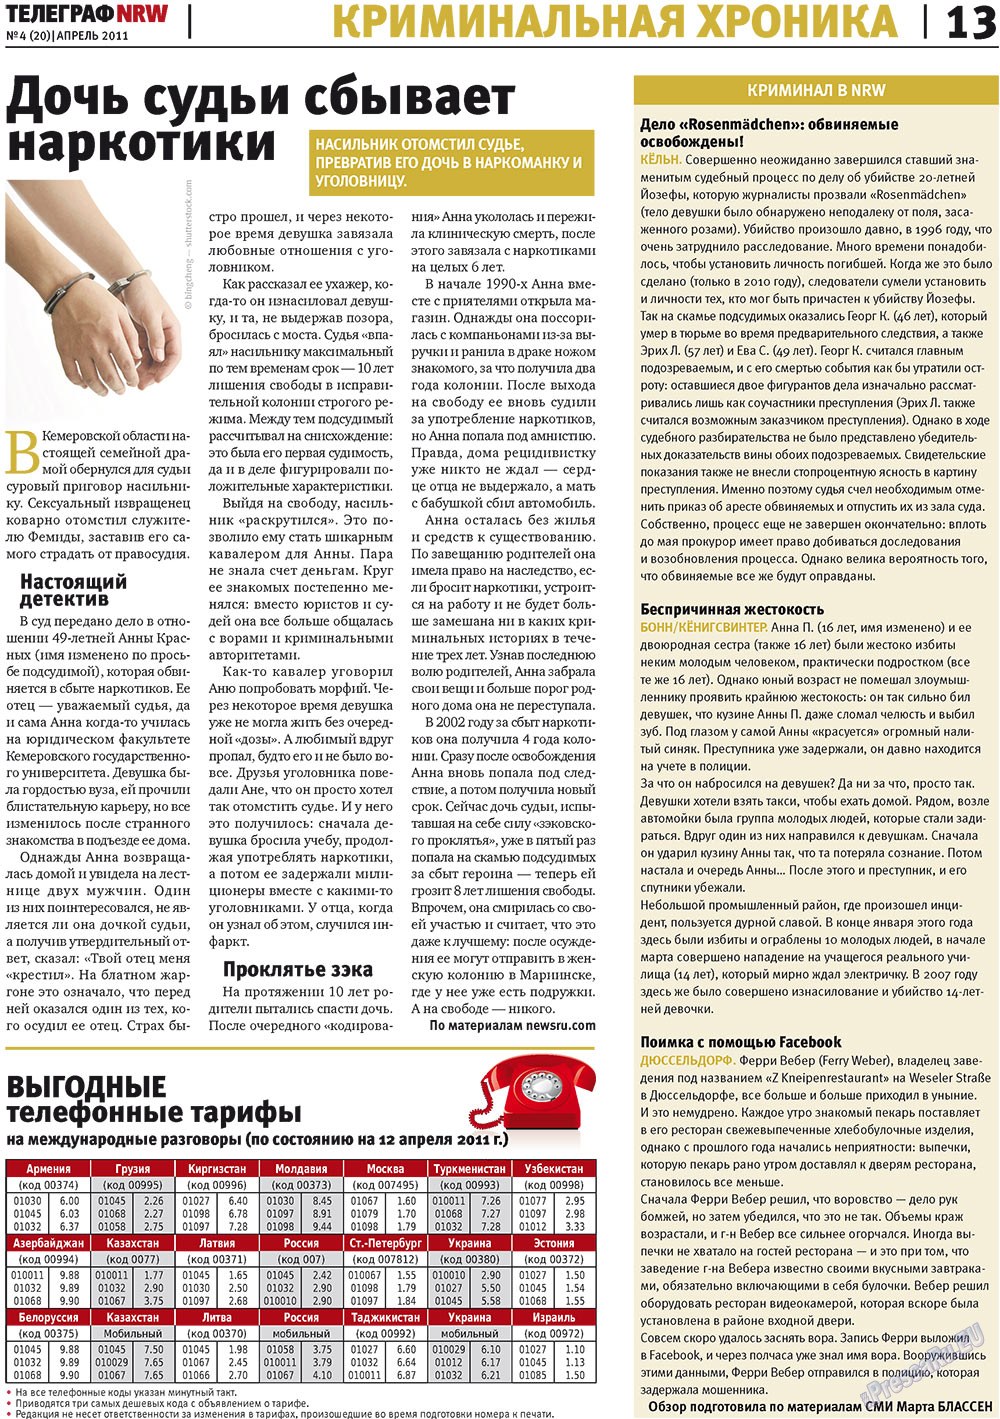 Телеграф NRW (газета). 2011 год, номер 4, стр. 13